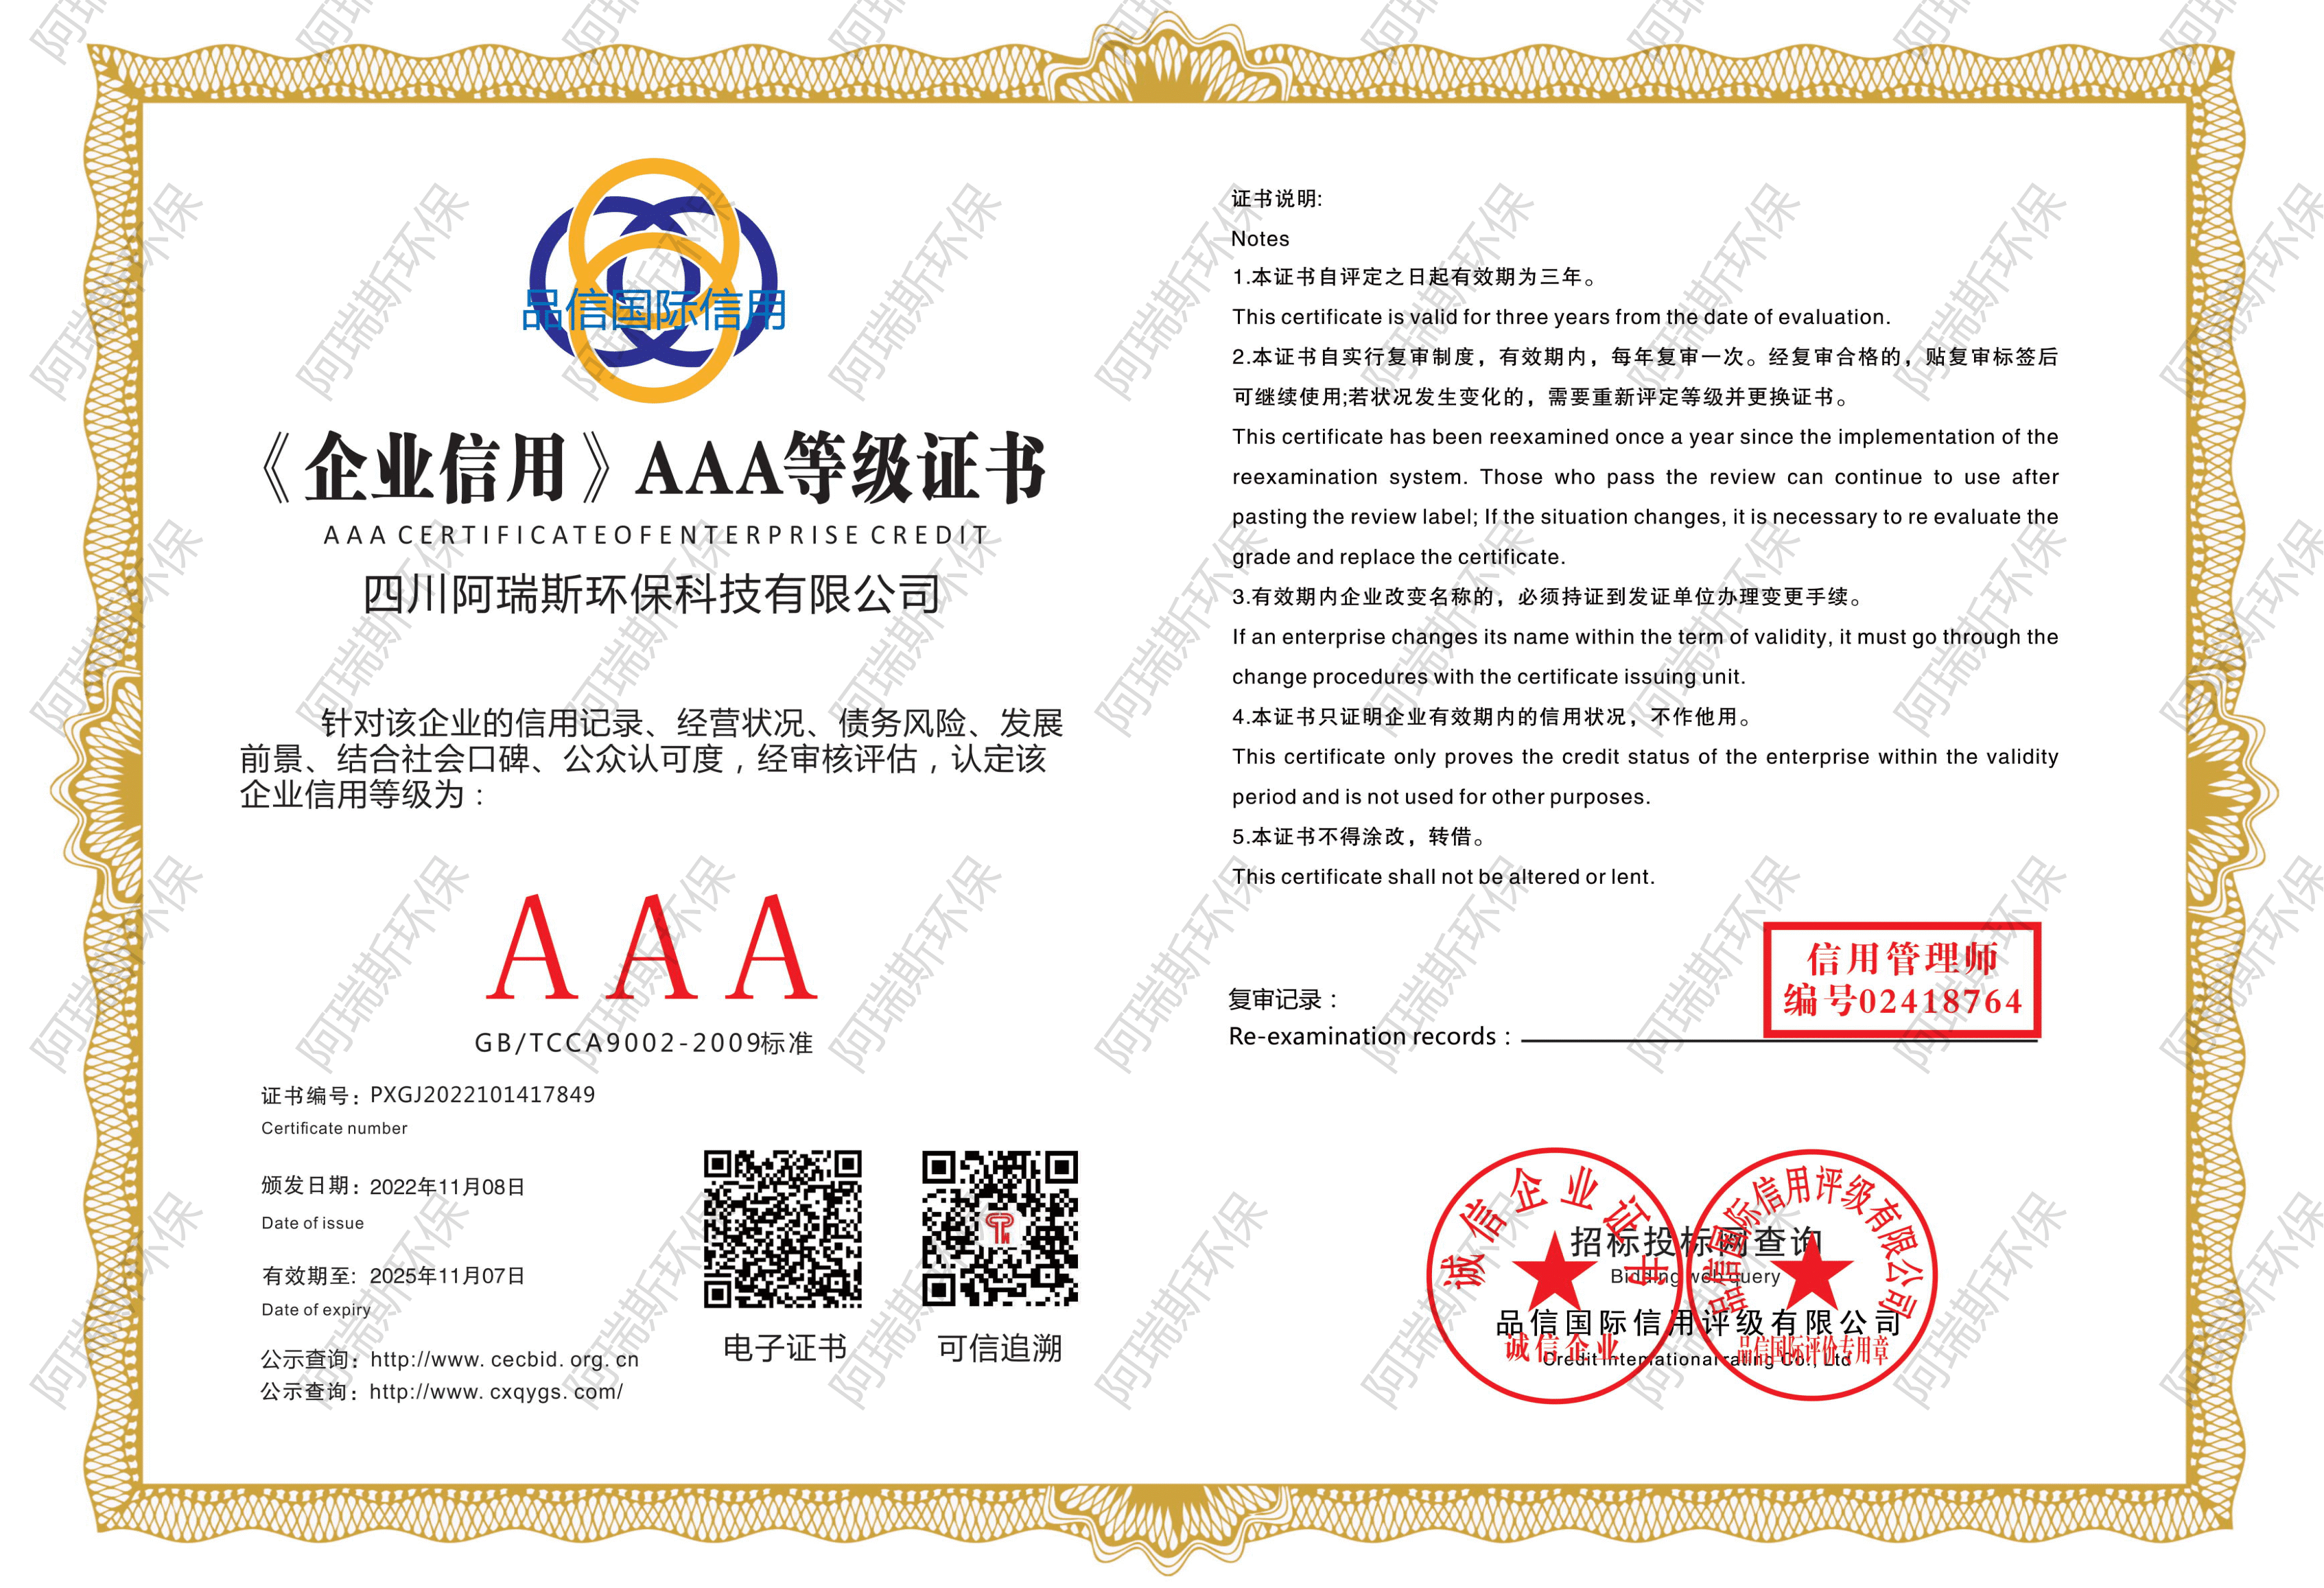 《企业信用》AAA等级证书